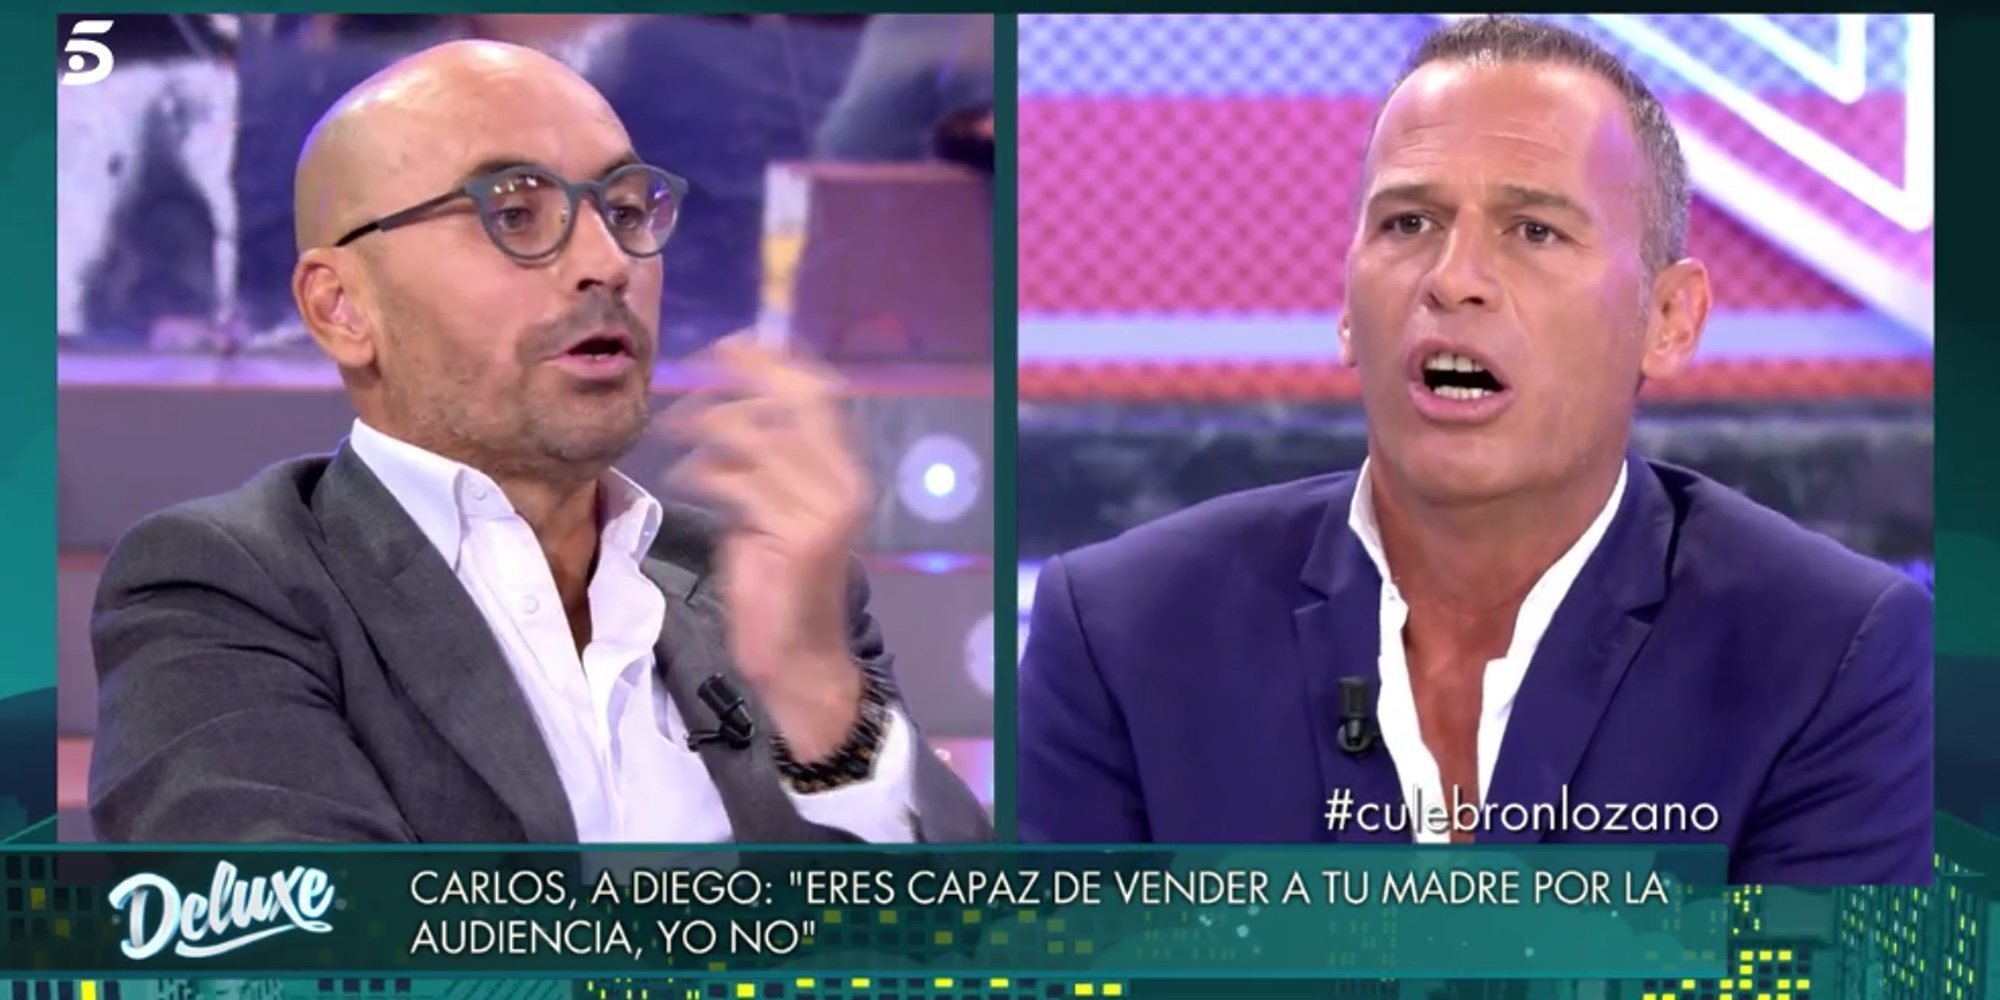 La enorme bronca entre Carlos Lozano y Diego Arrabal: "Eres un miserable y un montajista"